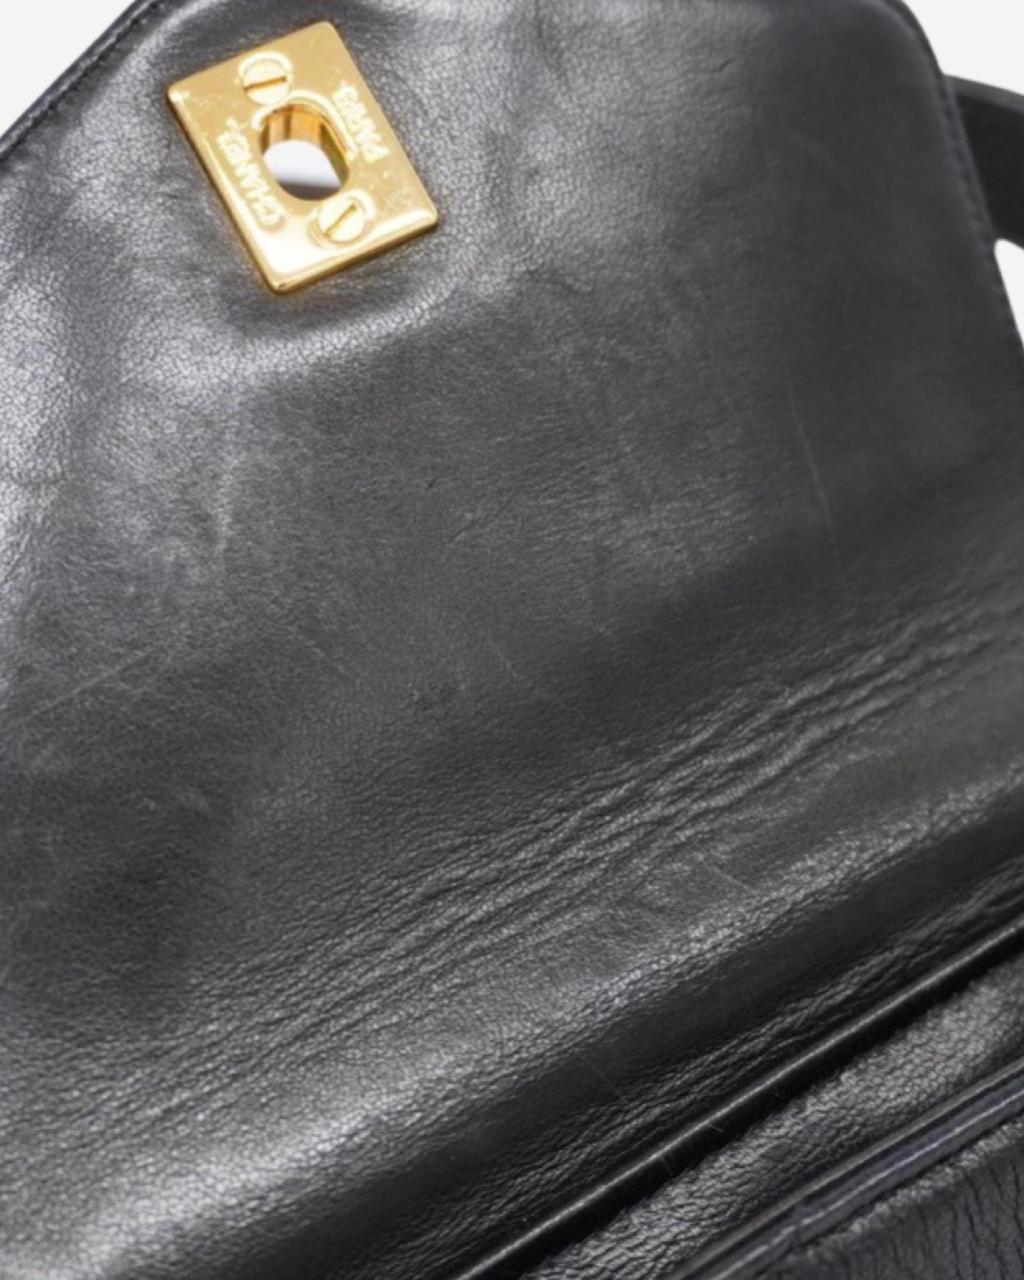 Vintage Chanel Matelassé Bag